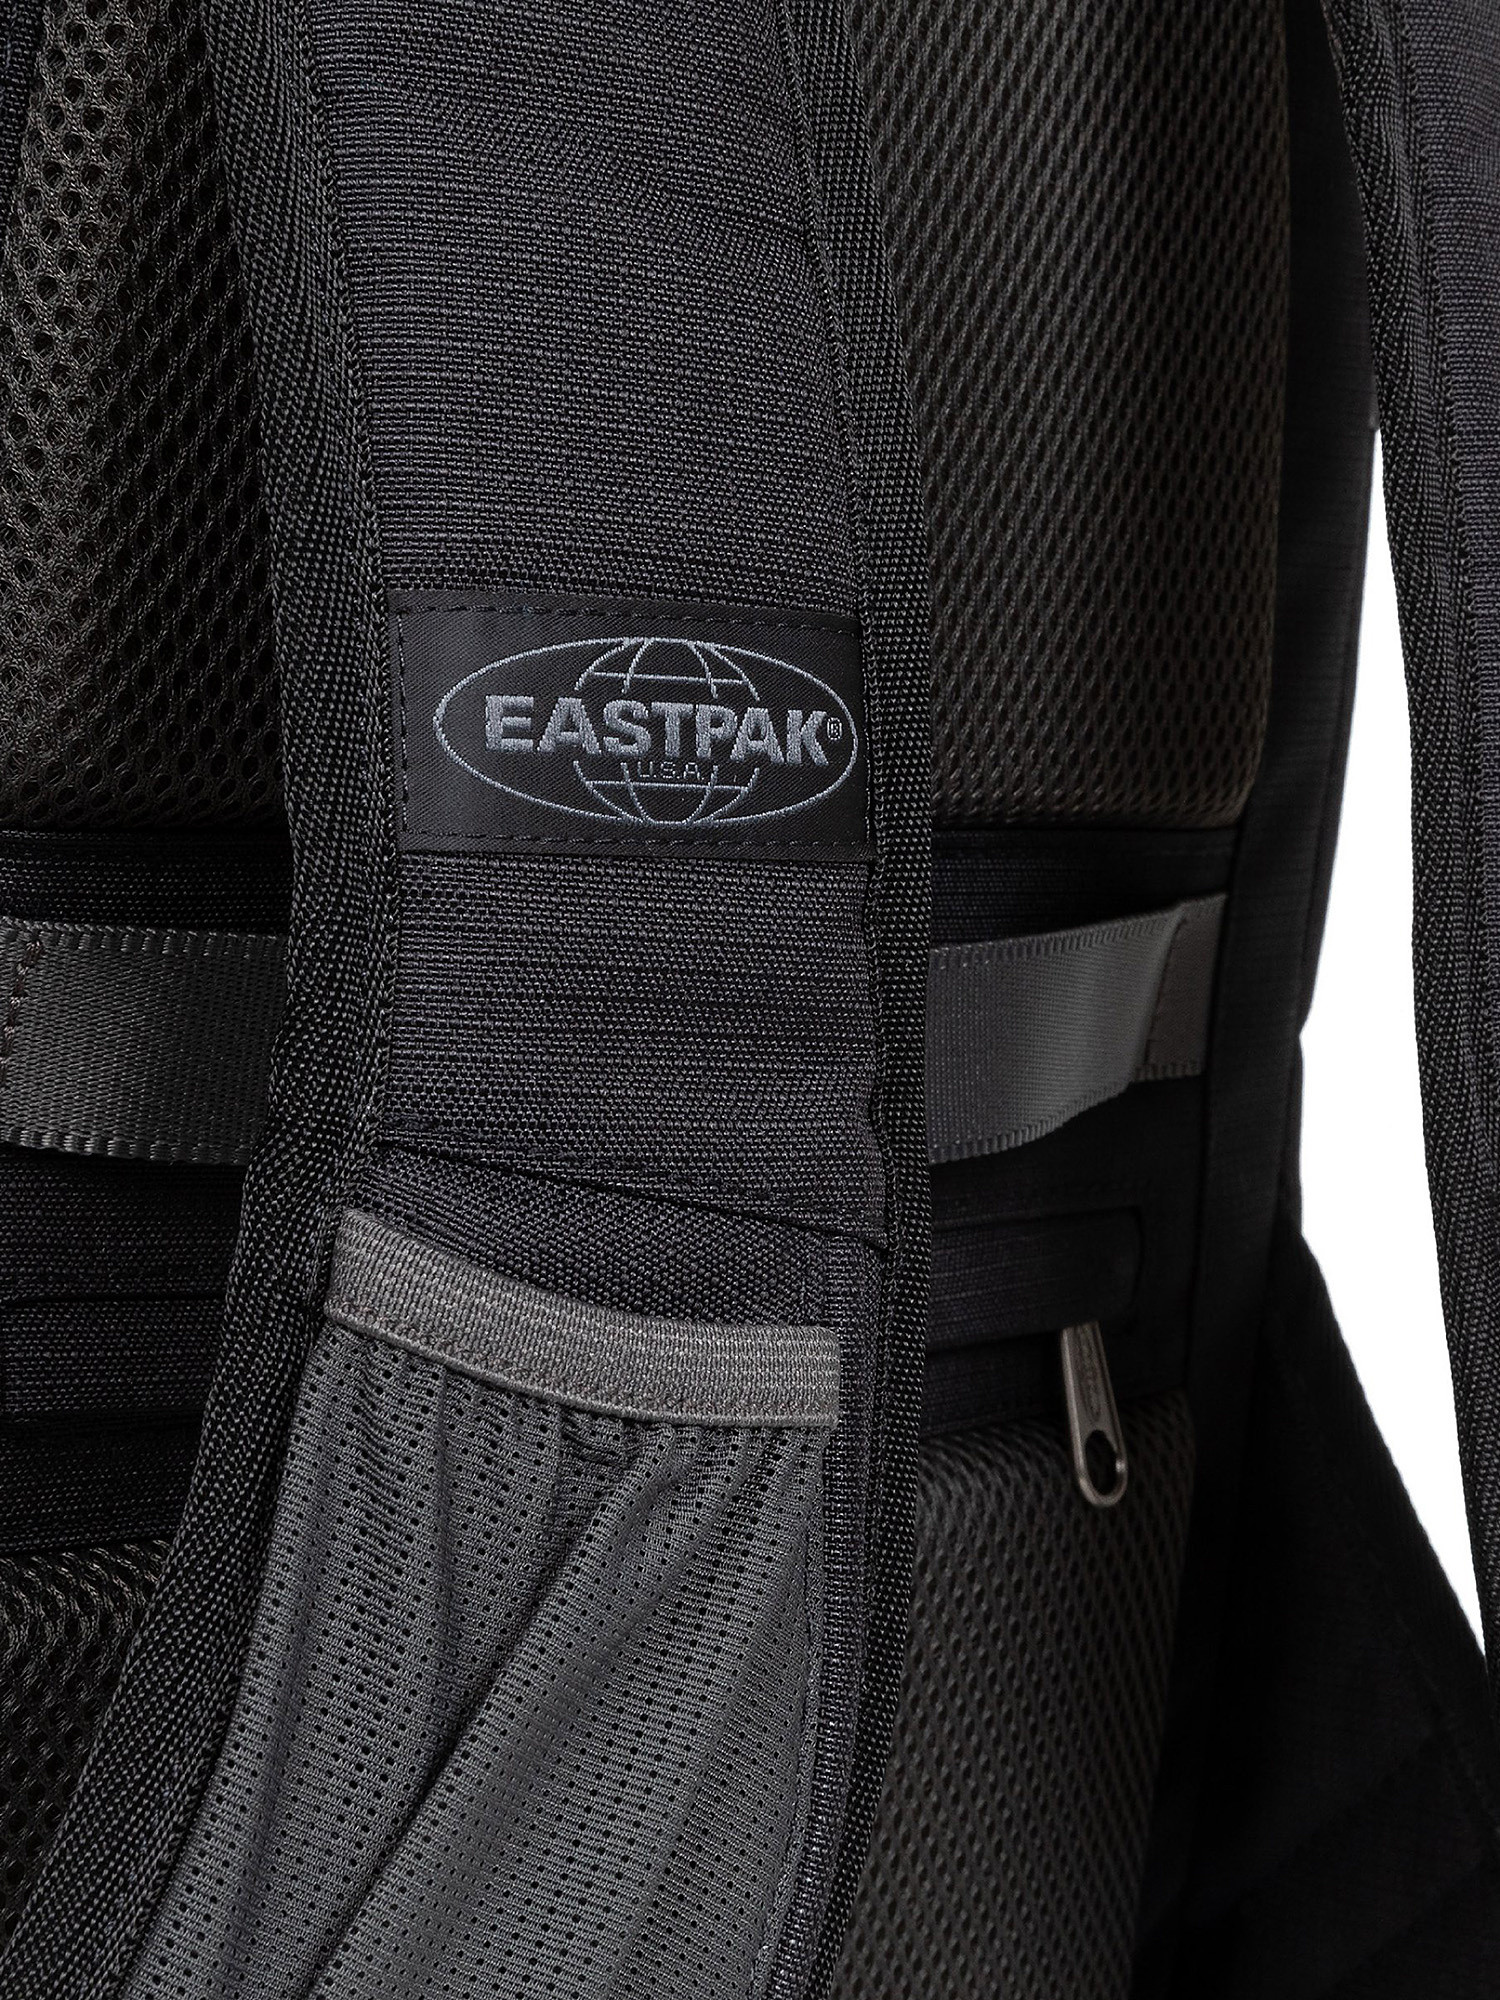 Eastpak - Out Safepack Out Black backpack, Black, large image number 6